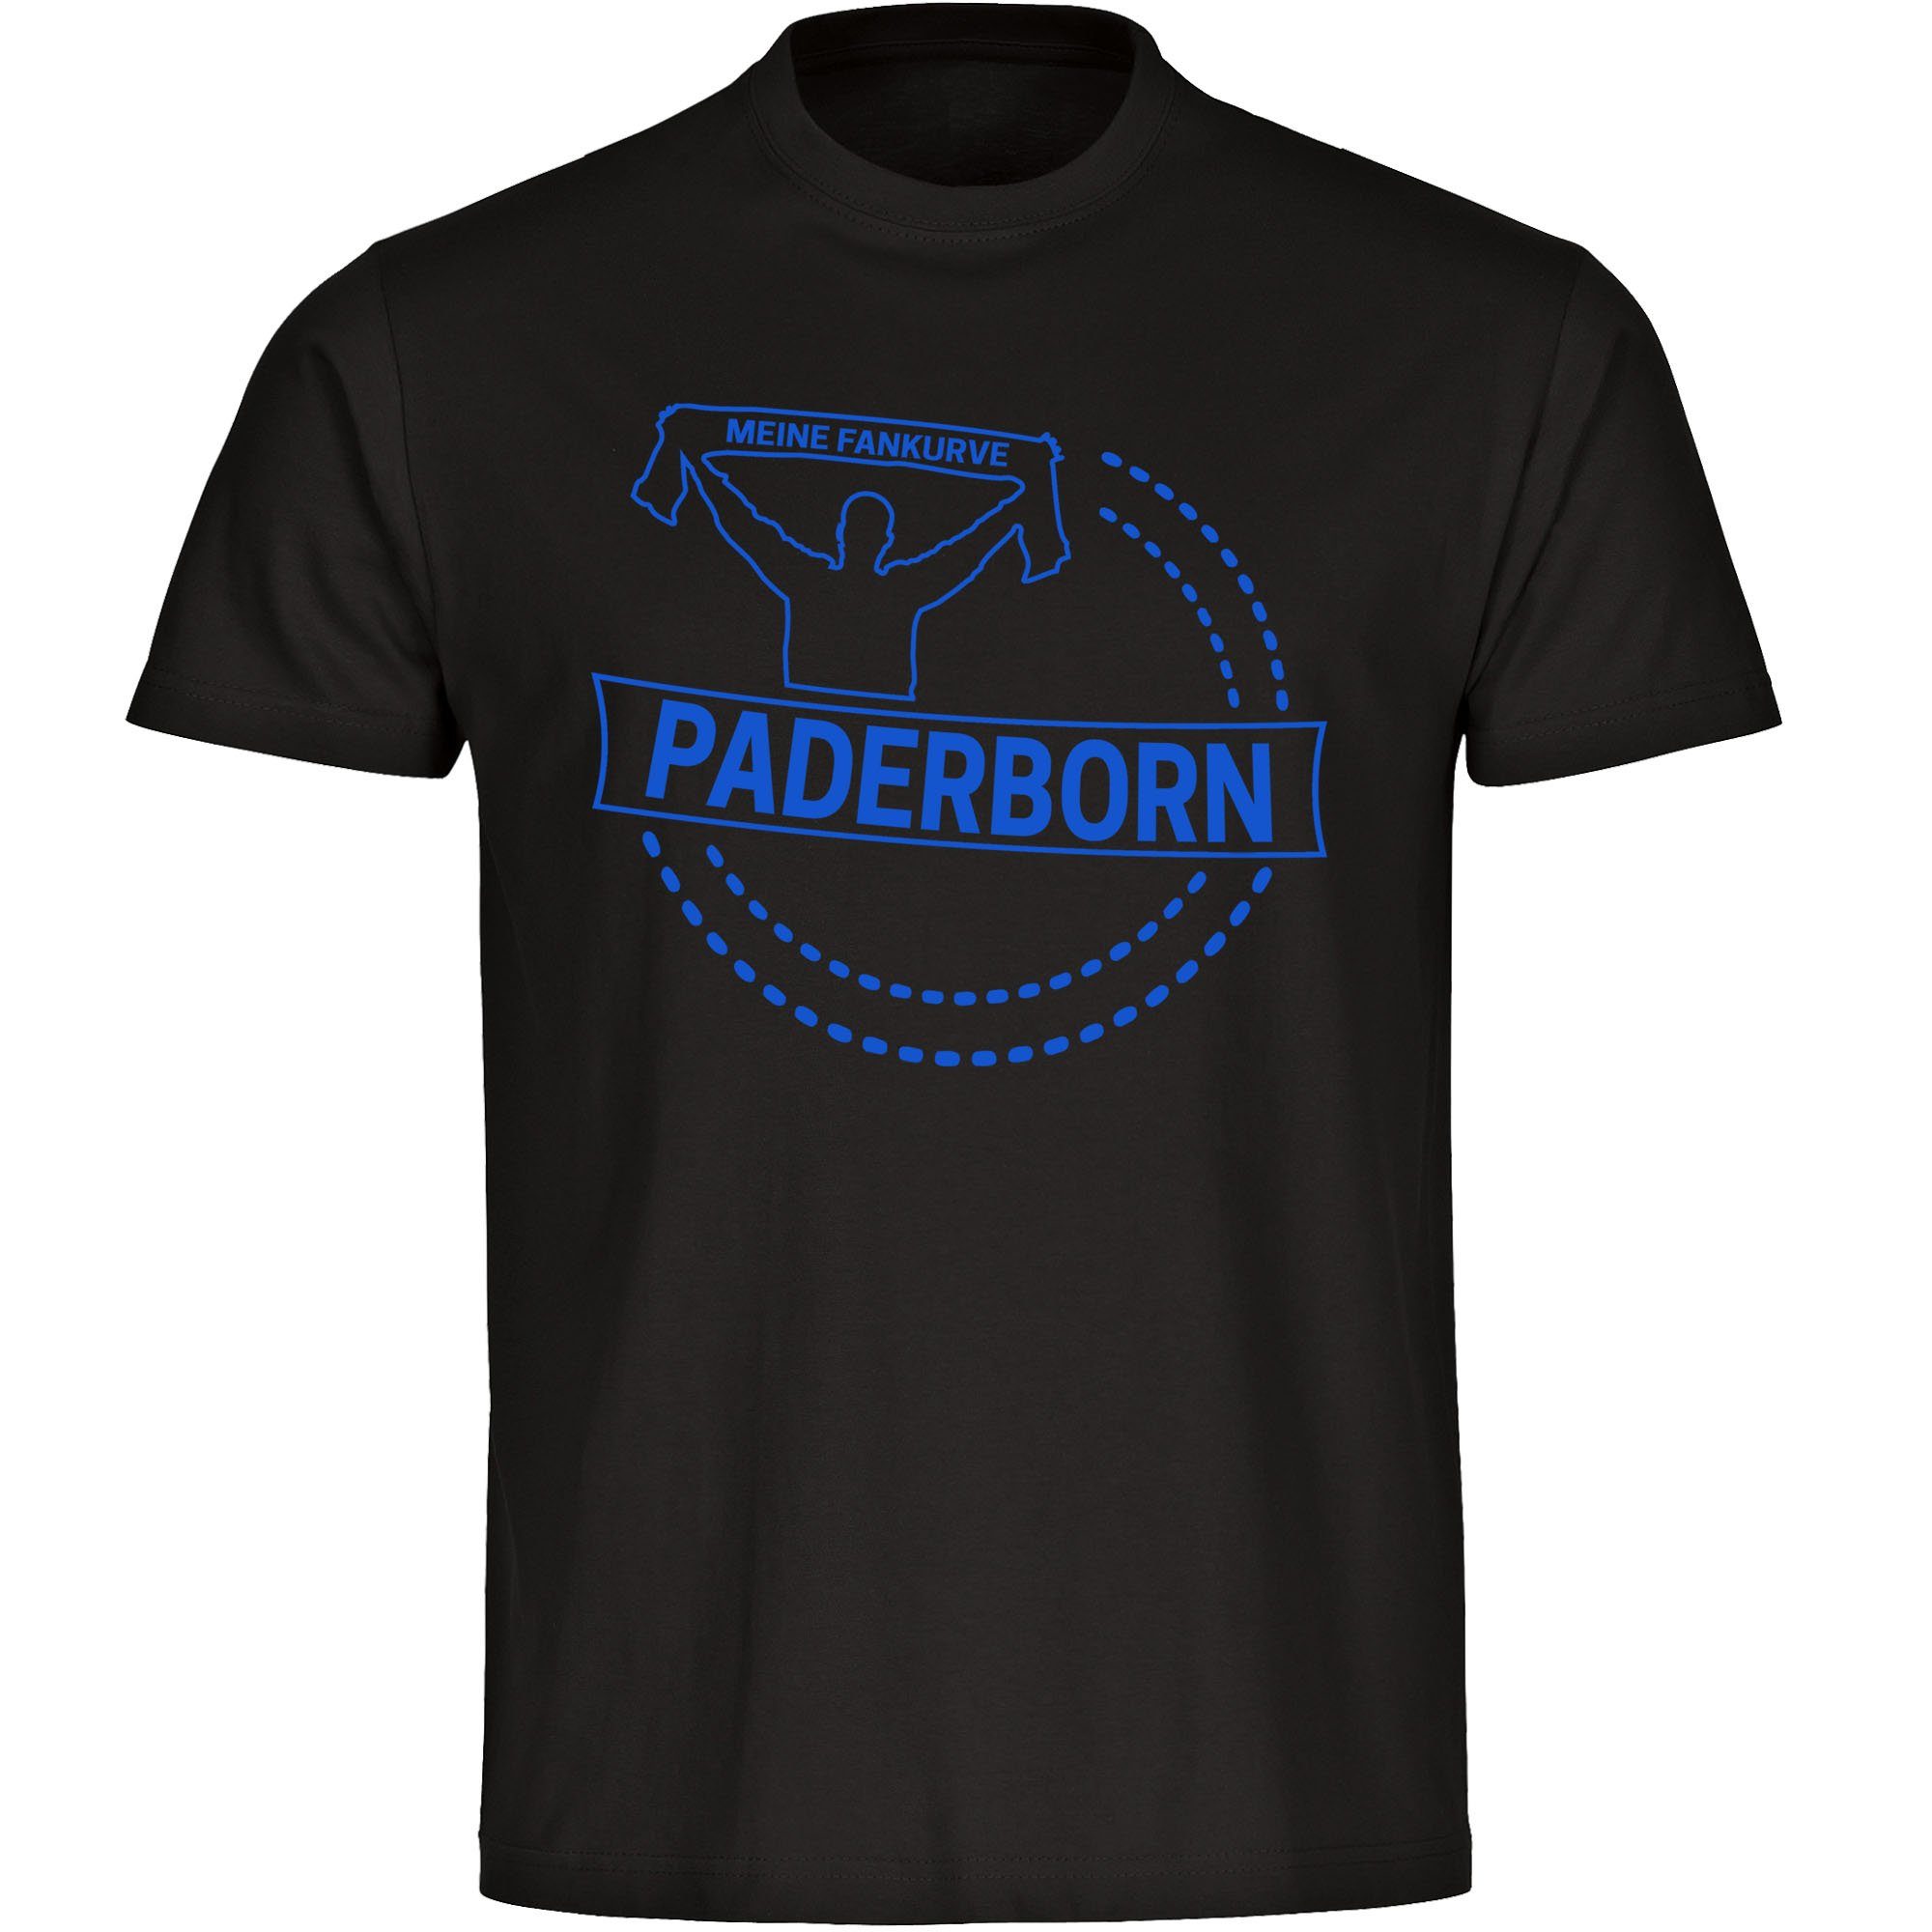 multifanshop T-Shirt Kinder Paderborn - Meine Fankurve - Boy Girl